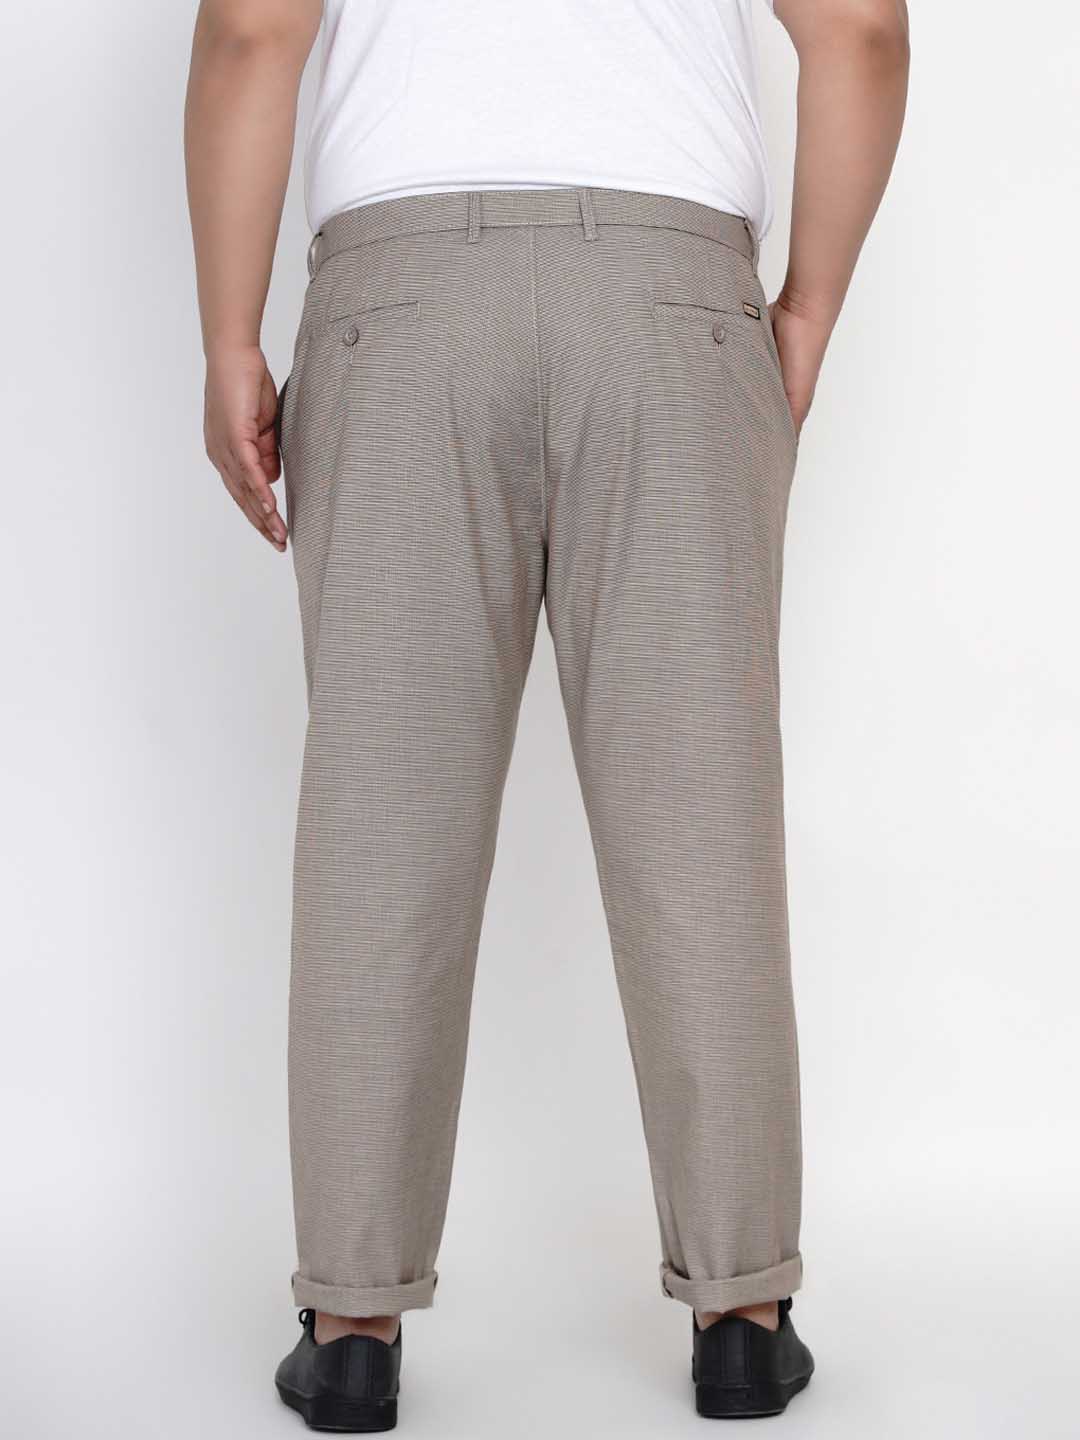 bottomwear/trousers/JPTR2145C/jptr2145c-4.jpg